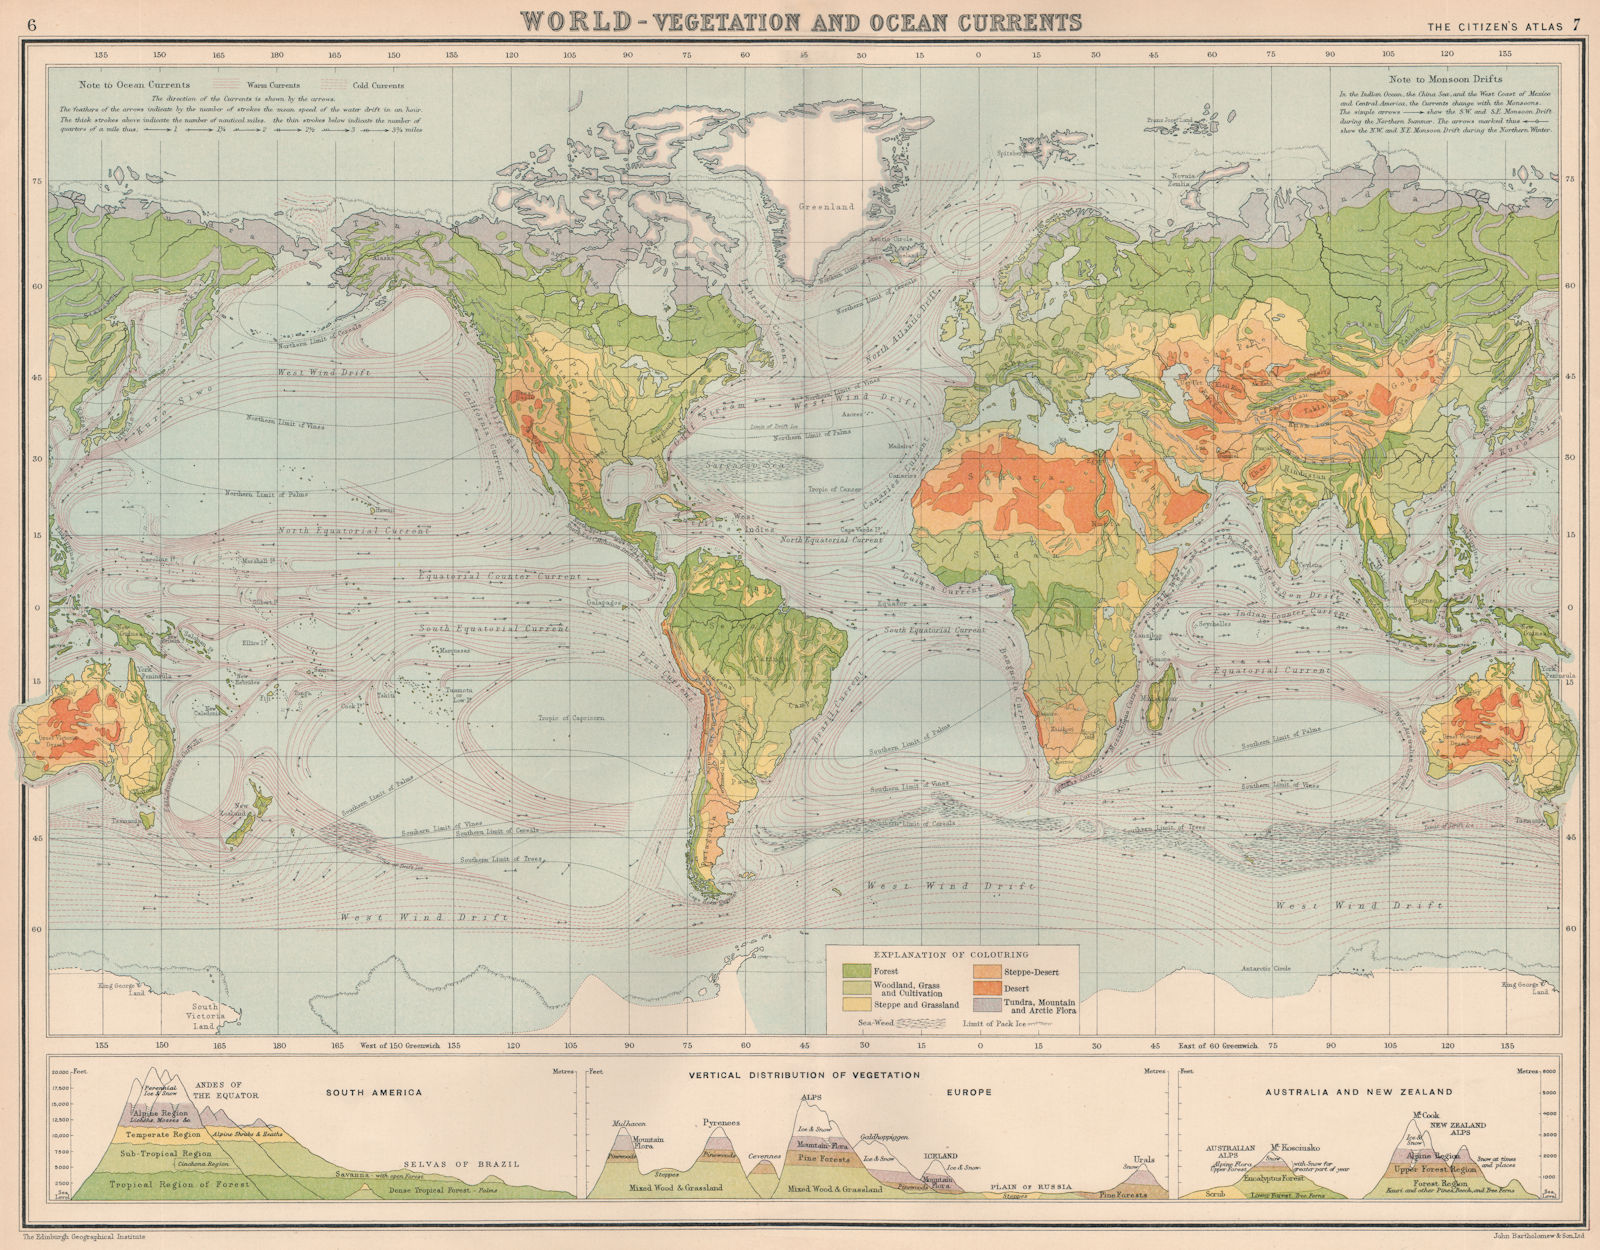 WORLD-VEGETATION AND OCEAN CURRENTS.Vertical Distribution of Vegetation 1924 map